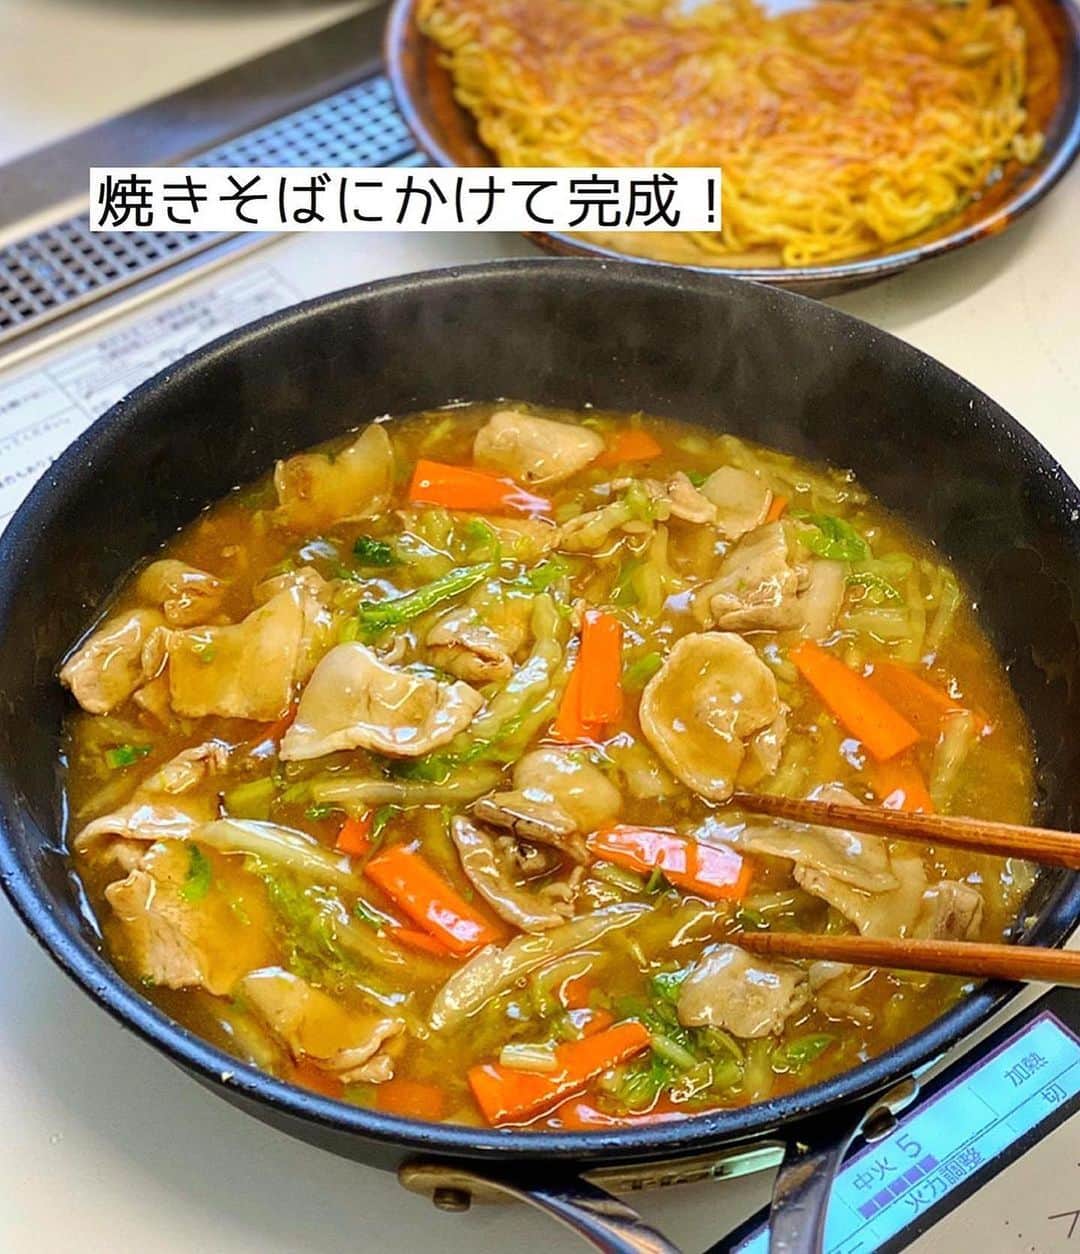 Mizuki【料理ブロガー・簡単レシピ】さんのインスタグラム写真 - (Mizuki【料理ブロガー・簡単レシピ】Instagram)「・フライパンひとつで🍳 ⁡ ［#レシピ ］ ーーーーーーーーーーーーーーーーー パリッと香ばし！あんかけ焼きそば ーーーーーーーーーーーーーーーーー ⁡ ⁡ ⁡ おはようございます☺️ ⁡ 今日ご紹介させていただくのは \ 豚肉と白菜のあんかけ焼きそば / (再掲載✨) ⁡ パリっと香ばしく焼いた麺に 具沢山のあんをかけて仕上げました💕 特別な材料なしでお手軽👌 フライパンひとつで とっても手軽にできますよ〜🍳 ⁡ コスパも抜群なので よかったらお試し下さいね😋 ⁡ ⁡ ⁡ ⋱⋰ ⋱⋰ ⋱⋰ ⋱⋰ ⋱⋰ ⋱⋰ ⋱⋰ 📍簡単・時短・節約レシピ更新中  Threadsもこちらから▼ @mizuki_31cafe ⁡ 📍謎の暮らし＆変なライブ垢 @mizuki_kurashi ⋱⋰ ⋱⋰ ⋱⋰ ⋱⋰ ⋱⋰ ⋱⋰ ⋱⋰ ⁡ ⁡ ⁡ ＿＿＿＿＿＿＿＿＿＿＿＿＿＿＿＿＿＿＿ 【2人分】 焼きそば...2玉 豚バラ薄切り肉...100g 白菜(又はキャベツ)...150g 人参...1/4本 ごま油...適量 ●水...200ml ●片栗粉・醤油・みりん...各大1 ●鶏がらスープ...小1 ⁡ 1.焼きそばは袋の上から揉んでほぐす。豚肉は3cm幅に切る。白菜は細切りにする。人参は短冊切りにする。●は合わせておく。 2.フライパンにごま油大1を強火で熱し、焼きそばを入れる。フライ返しで押さえながら両面焼き色が付くまで焼き、器に盛る。 3.そのままのフライパンにごま油小1を足して中火にかけ、豚肉、白菜、人参を炒める。火が通ったら●を加え、混ぜながらとろみを付けて2にかける。 ￣￣￣￣￣￣￣￣￣￣￣￣￣￣￣￣￣￣￣ ⁡ ⁡ 《ポイント》 ♦︎麺は押さえながら焼き色が付くまで焼きます♩ ♦︎調味料はよく混ぜてから加え、混ぜながら加熱して下さい♩ ♦︎豚バラの代わりに豚こまを使っても♩ ⁡ ⁡ ⁡ ⁡ ⁡ ⁡ ⋱⋰ ⋱⋰ ⋱⋰ ⋱⋰ ⋱⋰ ⋱⋰ ⋱⋰  愛用している調理器具・器など   #楽天ROOMに載せてます ‎𐩢𐩺  (ハイライトから飛べます🕊️) ⋱⋰ ⋱⋰ ⋱⋰ ⋱⋰ ⋱⋰ ⋱⋰ ⋱⋰ ⁡ ⁡ ⁡ ⁡ ⁡ ✼••┈┈┈┈┈••✼••┈┈┈┈┈••✼ 今日のごはんこれに決まり！ ‎𓊆#Mizukiのレシピノート 500品𓊇 ✼••┈┈┈┈┈••✼••┈┈┈┈┈••✼ ⁡ ˗ˏˋ おかげさまで25万部突破 ˎˊ˗ 料理レシピ本大賞準大賞を受賞しました✨ ⁡ 6000点の中からレシピを厳選し まさかの【500レシピ掲載】 肉や魚のメインおかずはもちろん 副菜、丼、麺、スープ、お菓子 ハレの日のレシピ、鍋のレシピまで 全てこの一冊で完結 𓌉◯𓇋 (全国の書店・ネット書店で発売中) ⁡ ⁡ ⁡ ⁡ ⁡ ⁡ #あんかけ焼きそばm #あんかけ焼きそば #白菜  #白菜レシピ #キャベツ  #キャベツレシピ #ランチ #豚肉  #焼きそば #節約料理  #簡単料理  #時短料理 #mizukiレシピ  #時短レシピ #節約レシピ #簡単レシピ」10月17日 6時29分 - mizuki_31cafe